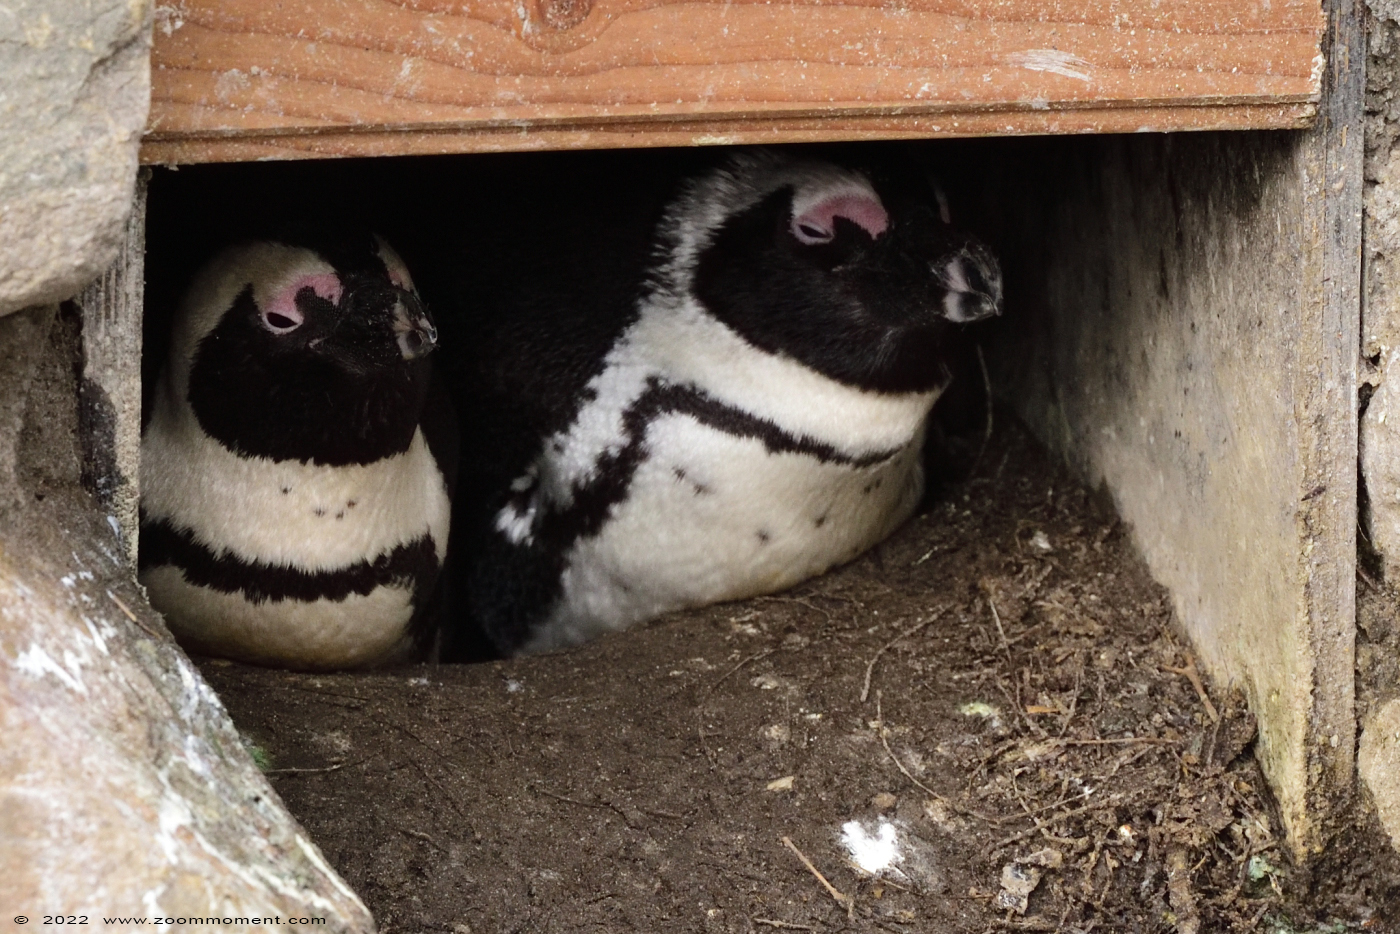 Afrikaanse pinguïn ( Spheniscus demersus ) African penguin
Trefwoorden: Zooparc Overloon Nederland Afrikaanse pinguïn Spheniscus demersus African penguin Afrikanischer Pinguin Brillenpinguin